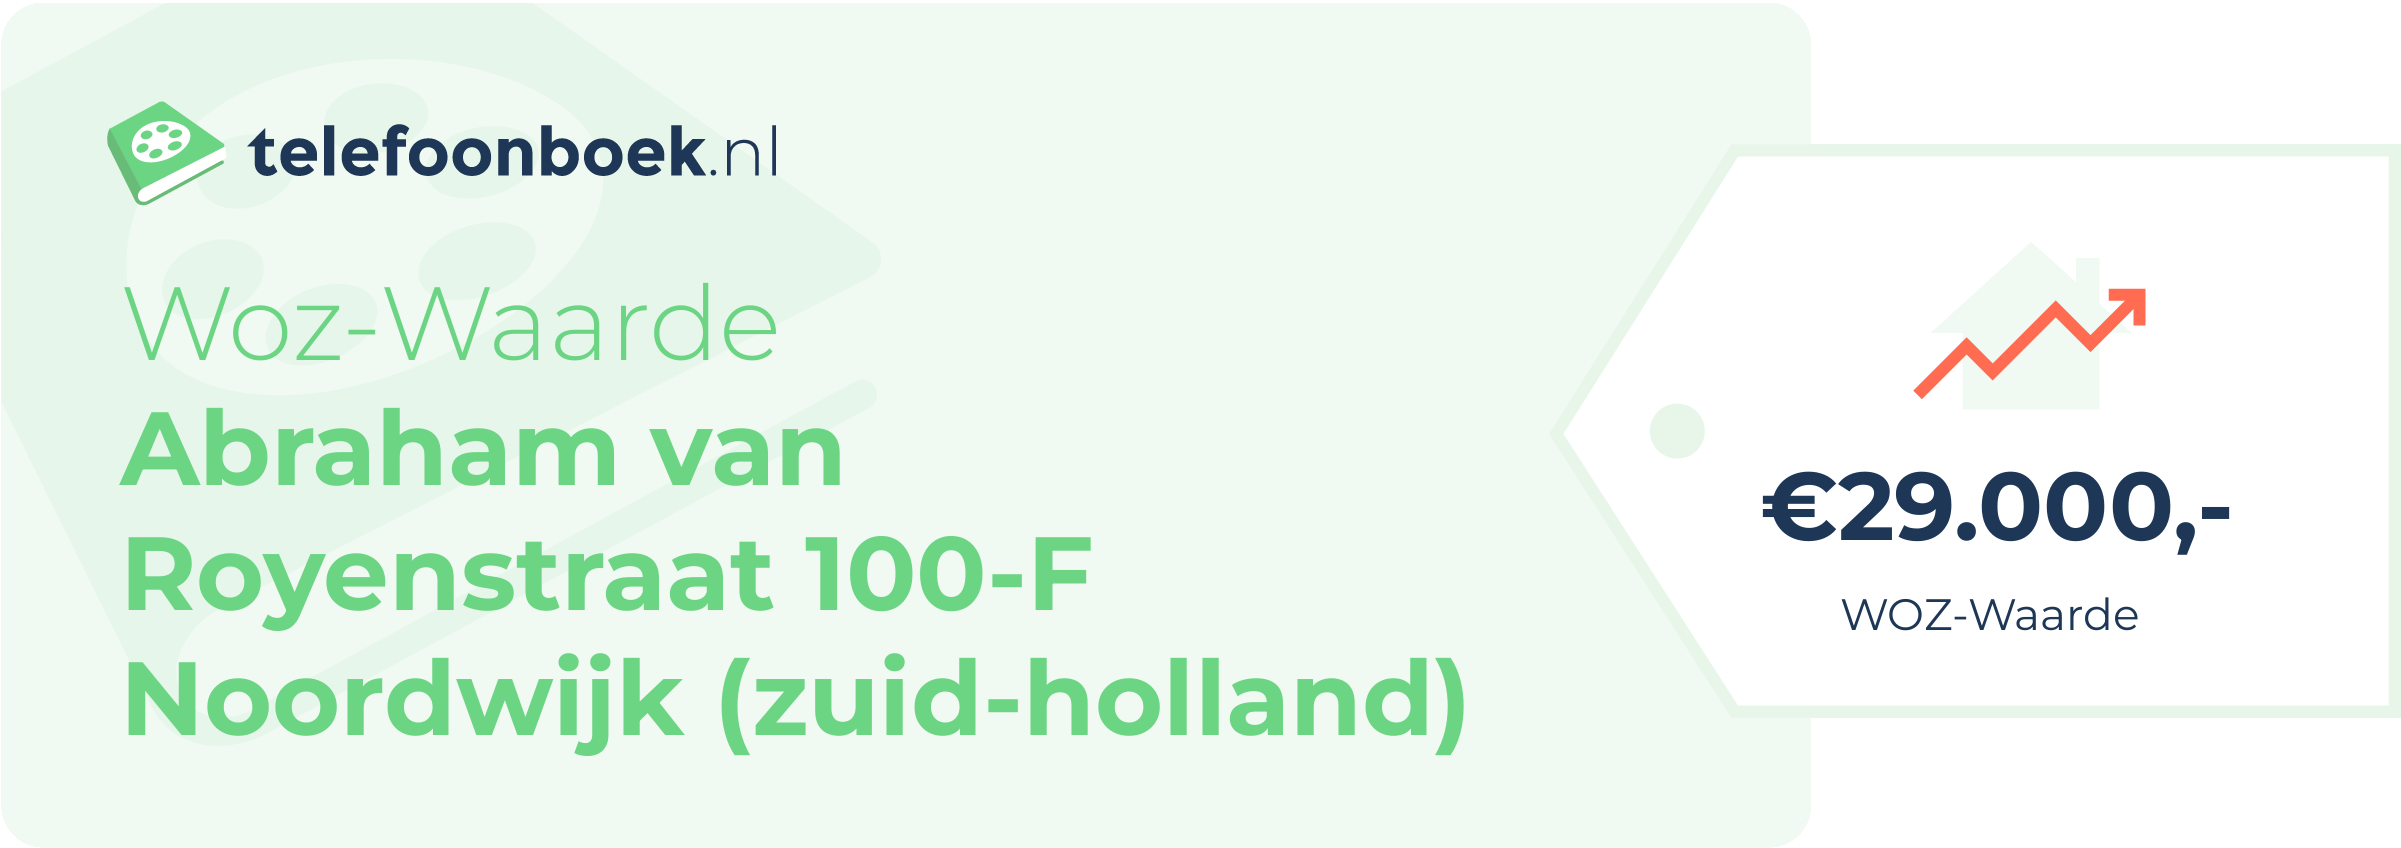 WOZ-waarde Abraham Van Royenstraat 100-F Noordwijk (Zuid-Holland)